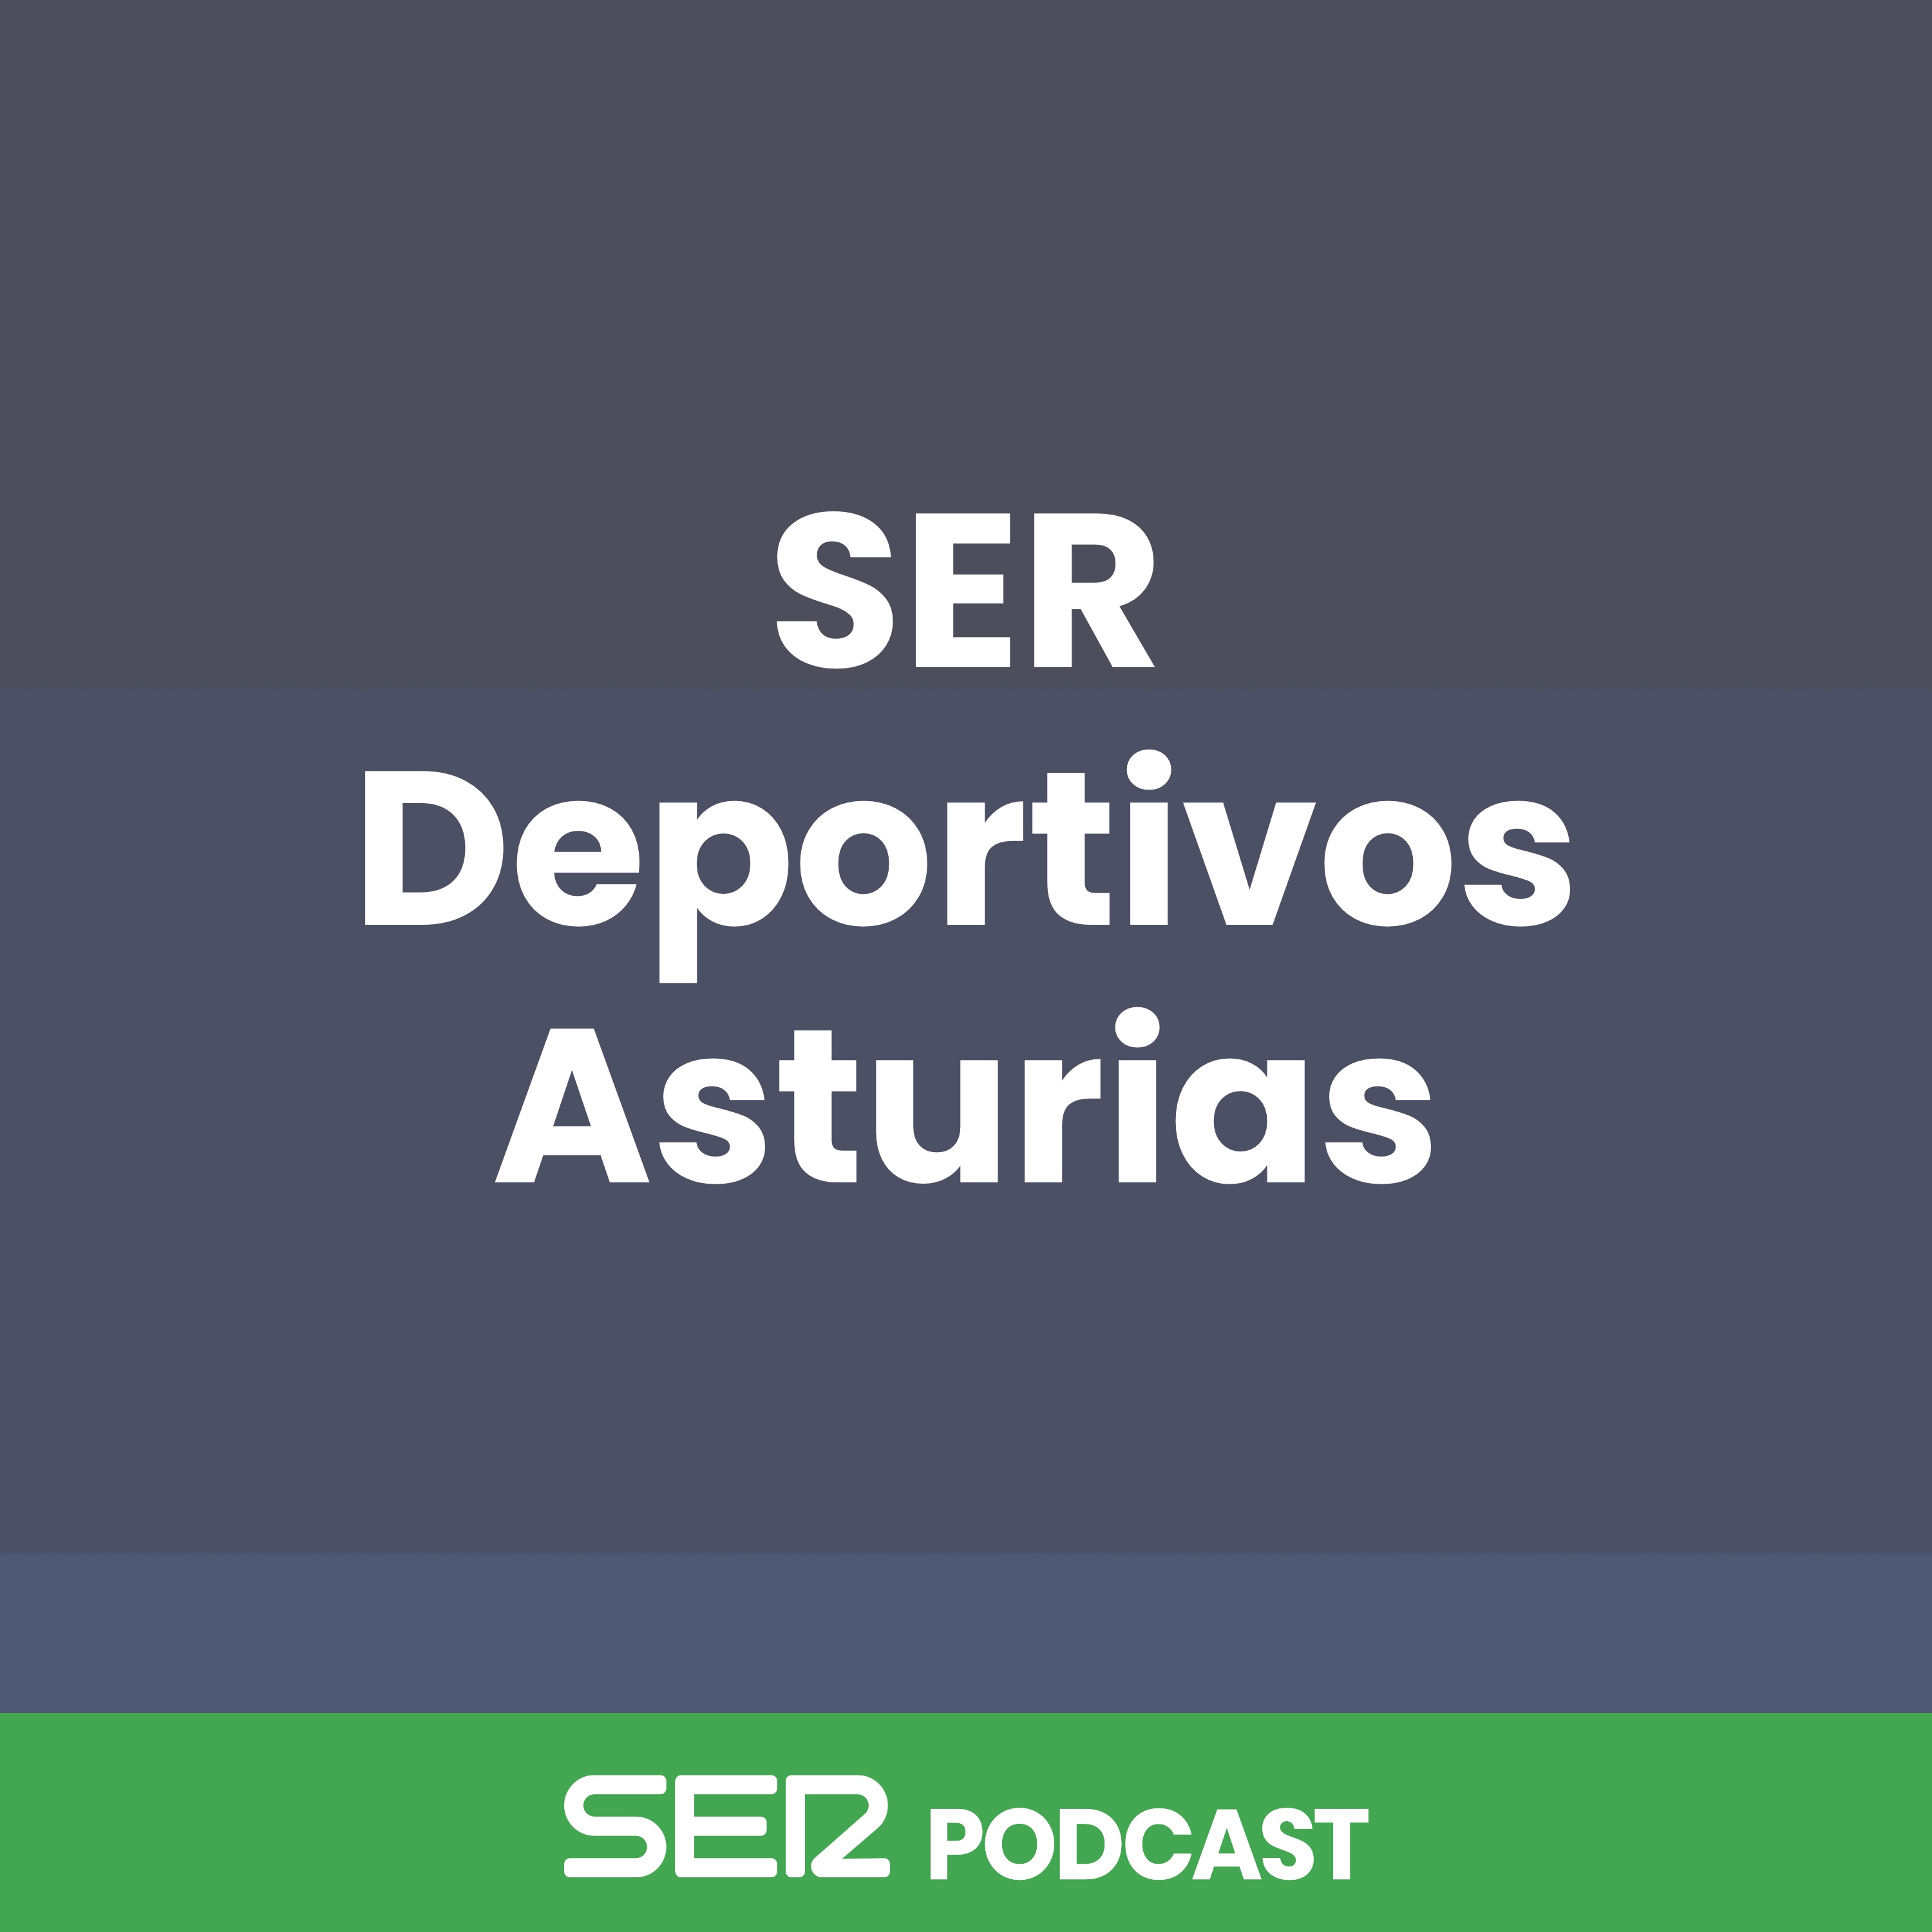 SER Deportivos Asturias